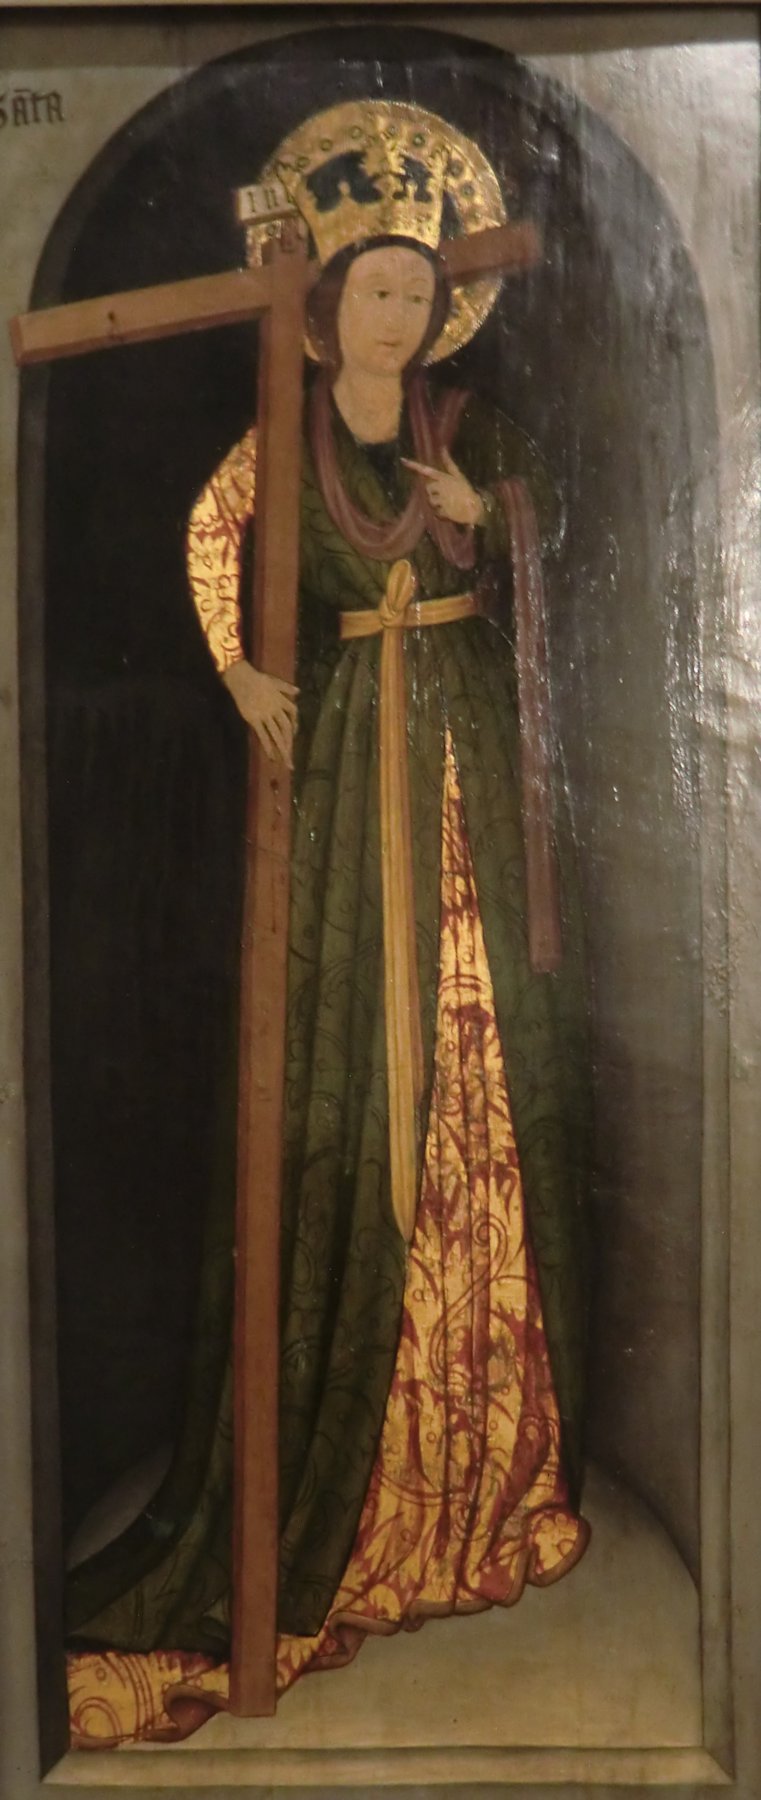 Gemälde, 15. Jahrhundert, im Museum der Kathedrale in León